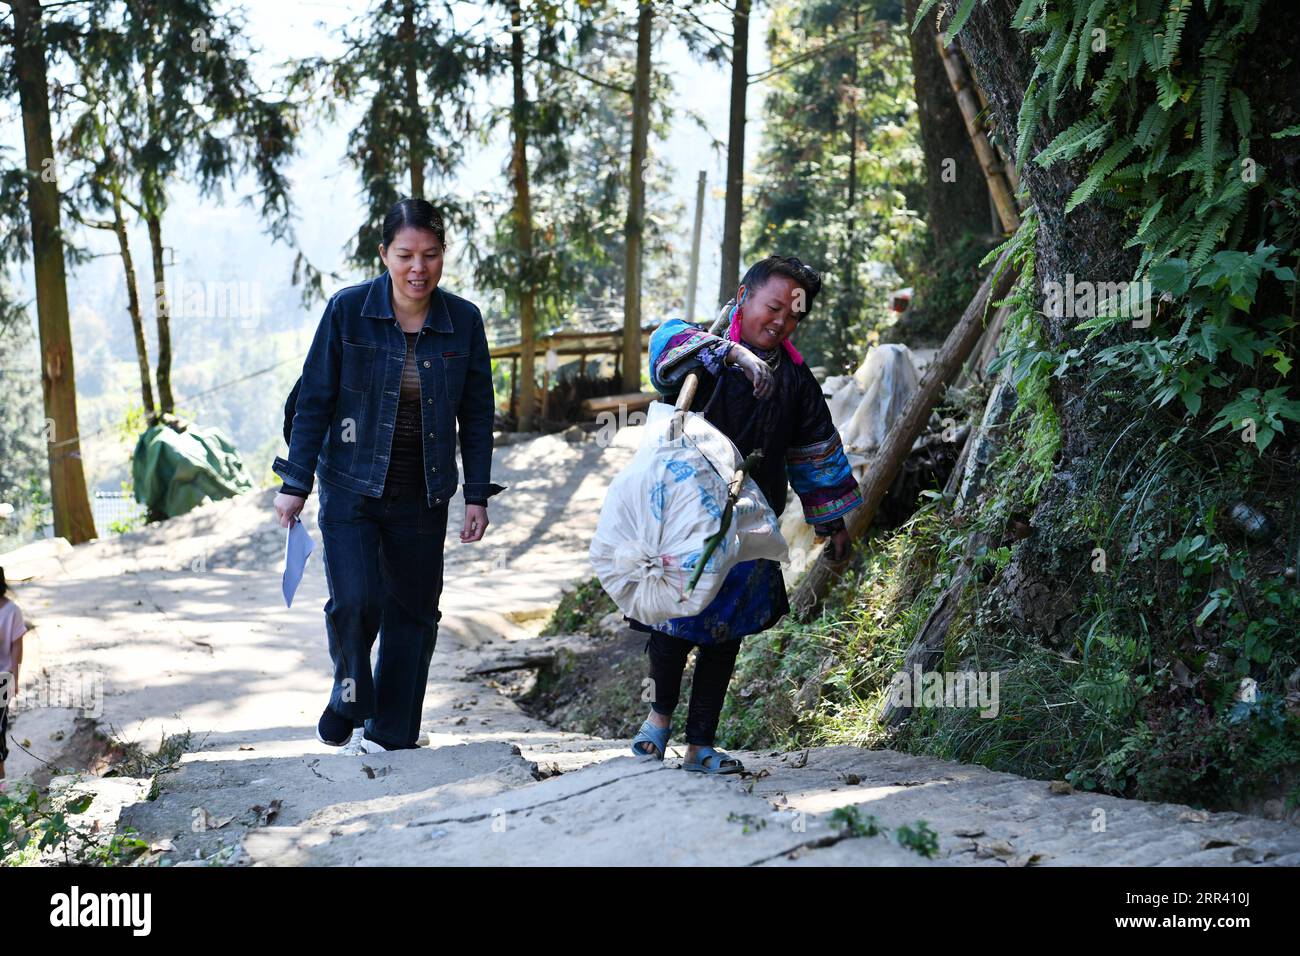 201116 -- GUIYANG, 16 novembre 2020 -- Liu Ying L discute avec un villageois en route pour rendre visite à une famille pauvre enregistrée dans le village de Dongqin, comté de Congjiang, province du Guizhou, dans le sud-ouest de la Chine, le 11 novembre 2020. Situé dans la région de la montagne Yueliang, le comté de Congjiang est l'un des neuf comtés du Guizhou qui luttent encore contre la pauvreté. Après avoir obtenu son diplôme universitaire, He Changle, rejoint sa mère Liu Ying, devient assistant de lutte contre la pauvreté dans le village de Dongqin du comté de Congjiang à la fin de 2019. Dans leur travail, ils parviennent à résoudre les difficultés rencontrées par les villageois locaux, y compris la rénovation de dil Banque D'Images